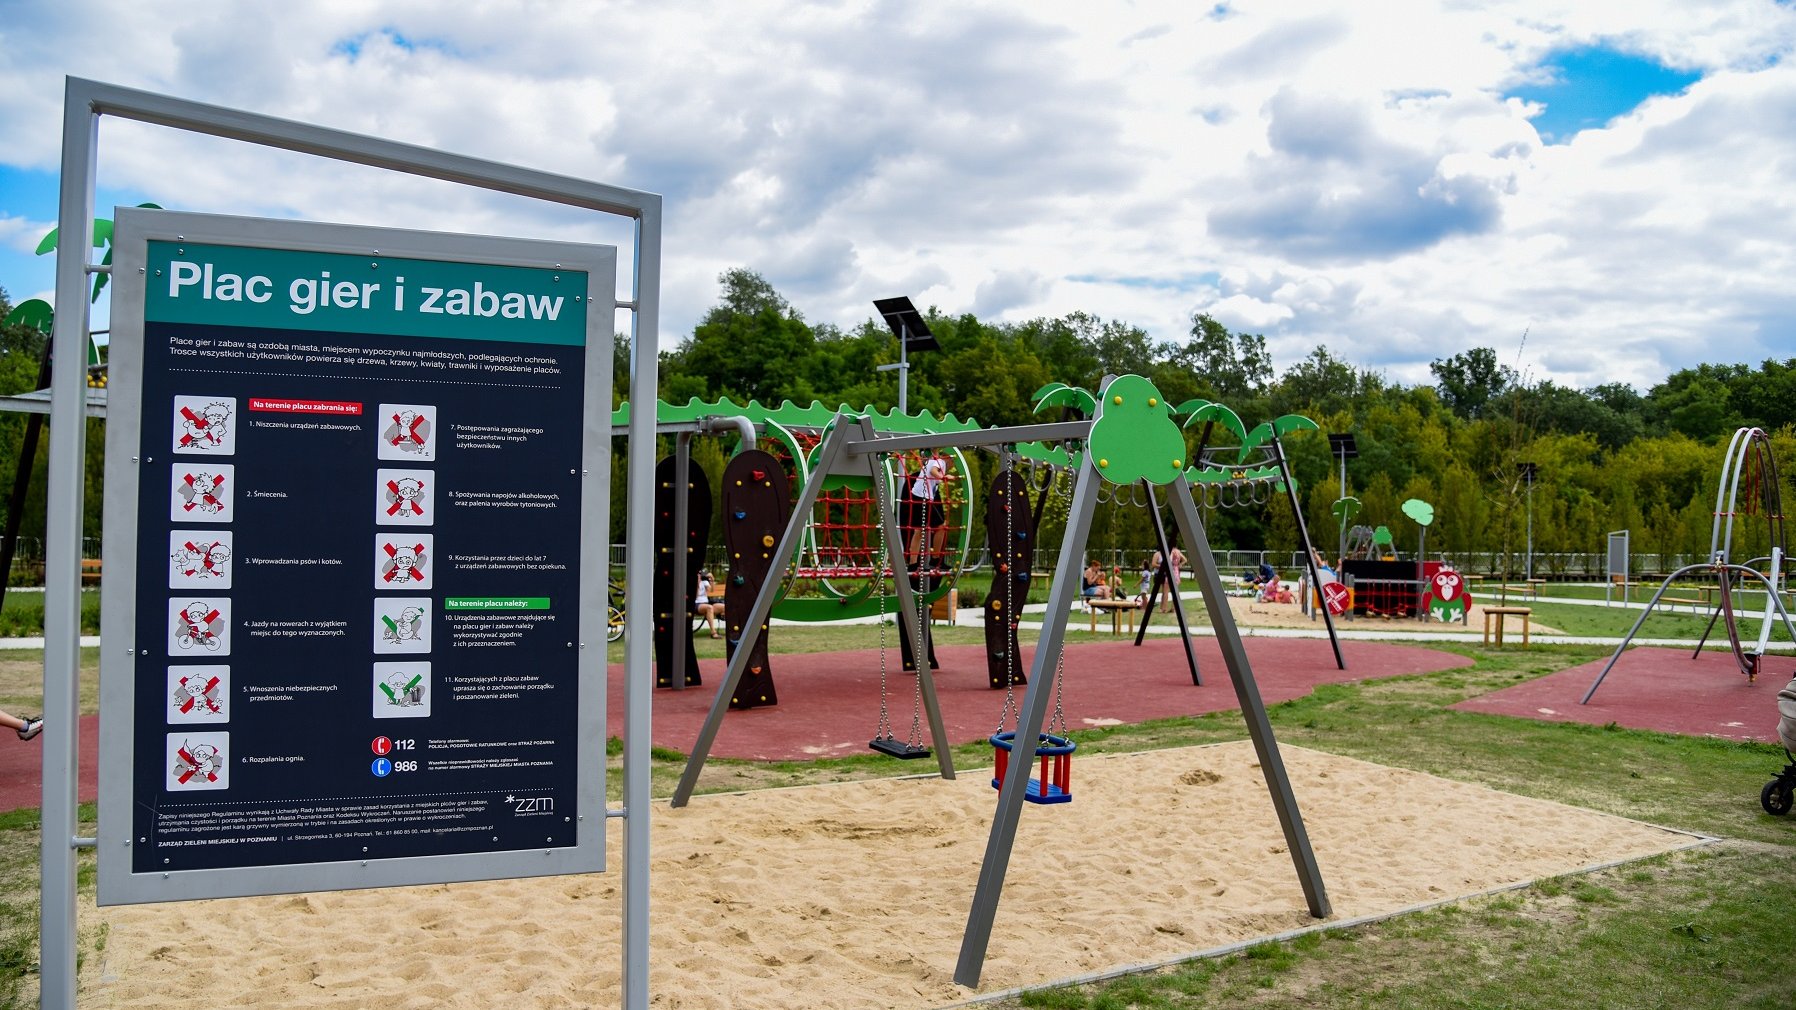 Mieszkańcy Poznania zyskali nowy park przy ul. Dolna Wilda